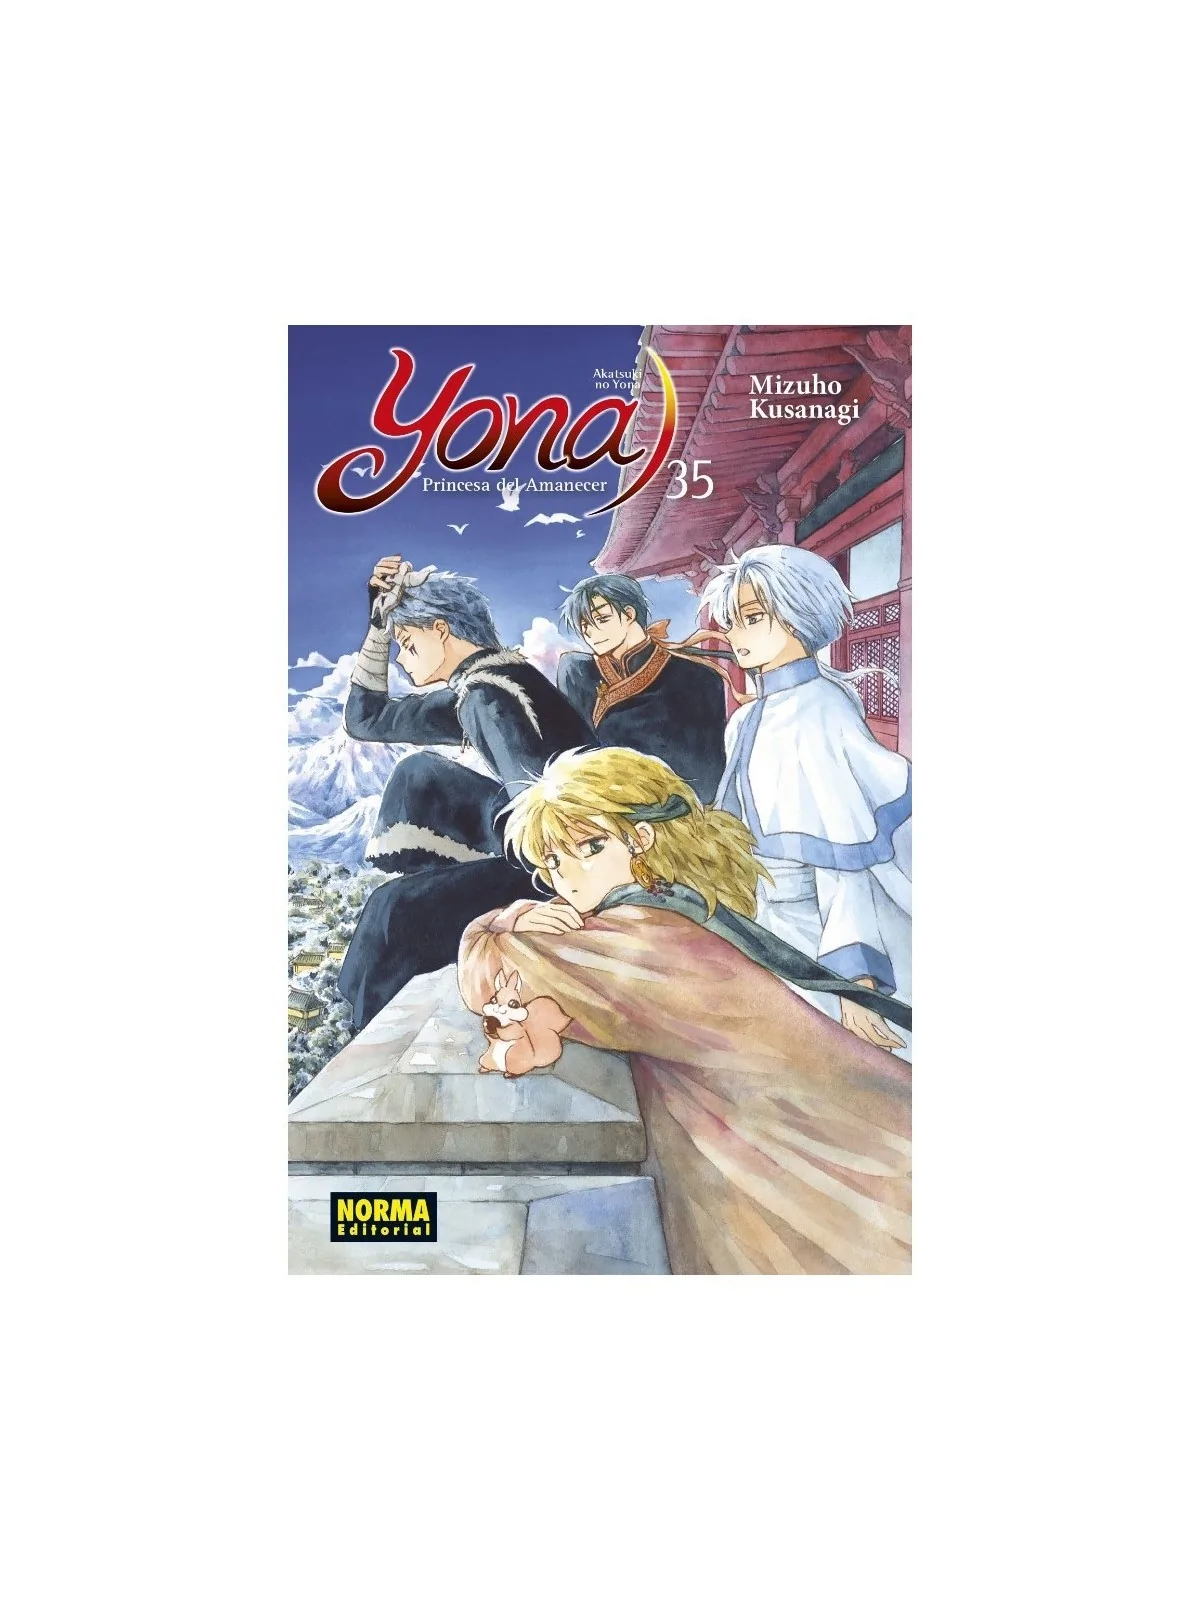 Comprar Yona, Princesa del Amanecer 35 Ed. Especial Limitada barato al